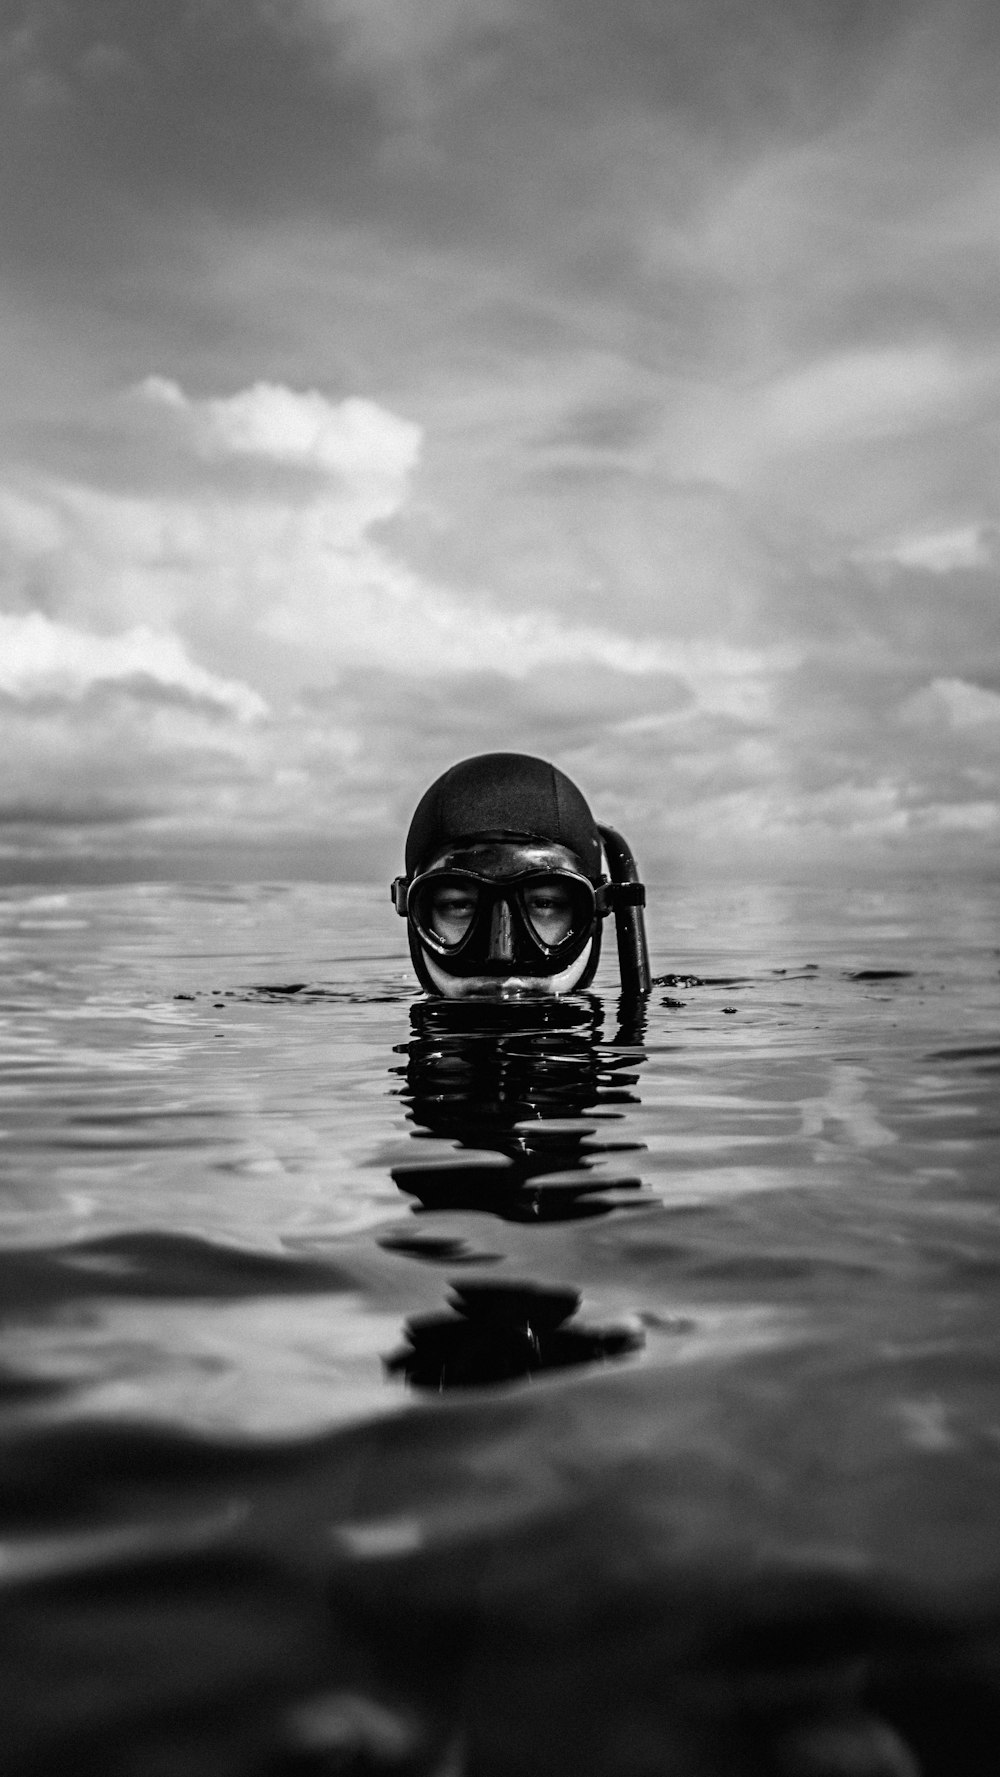 水上でゴーグルを着用している人のグレースケール写真